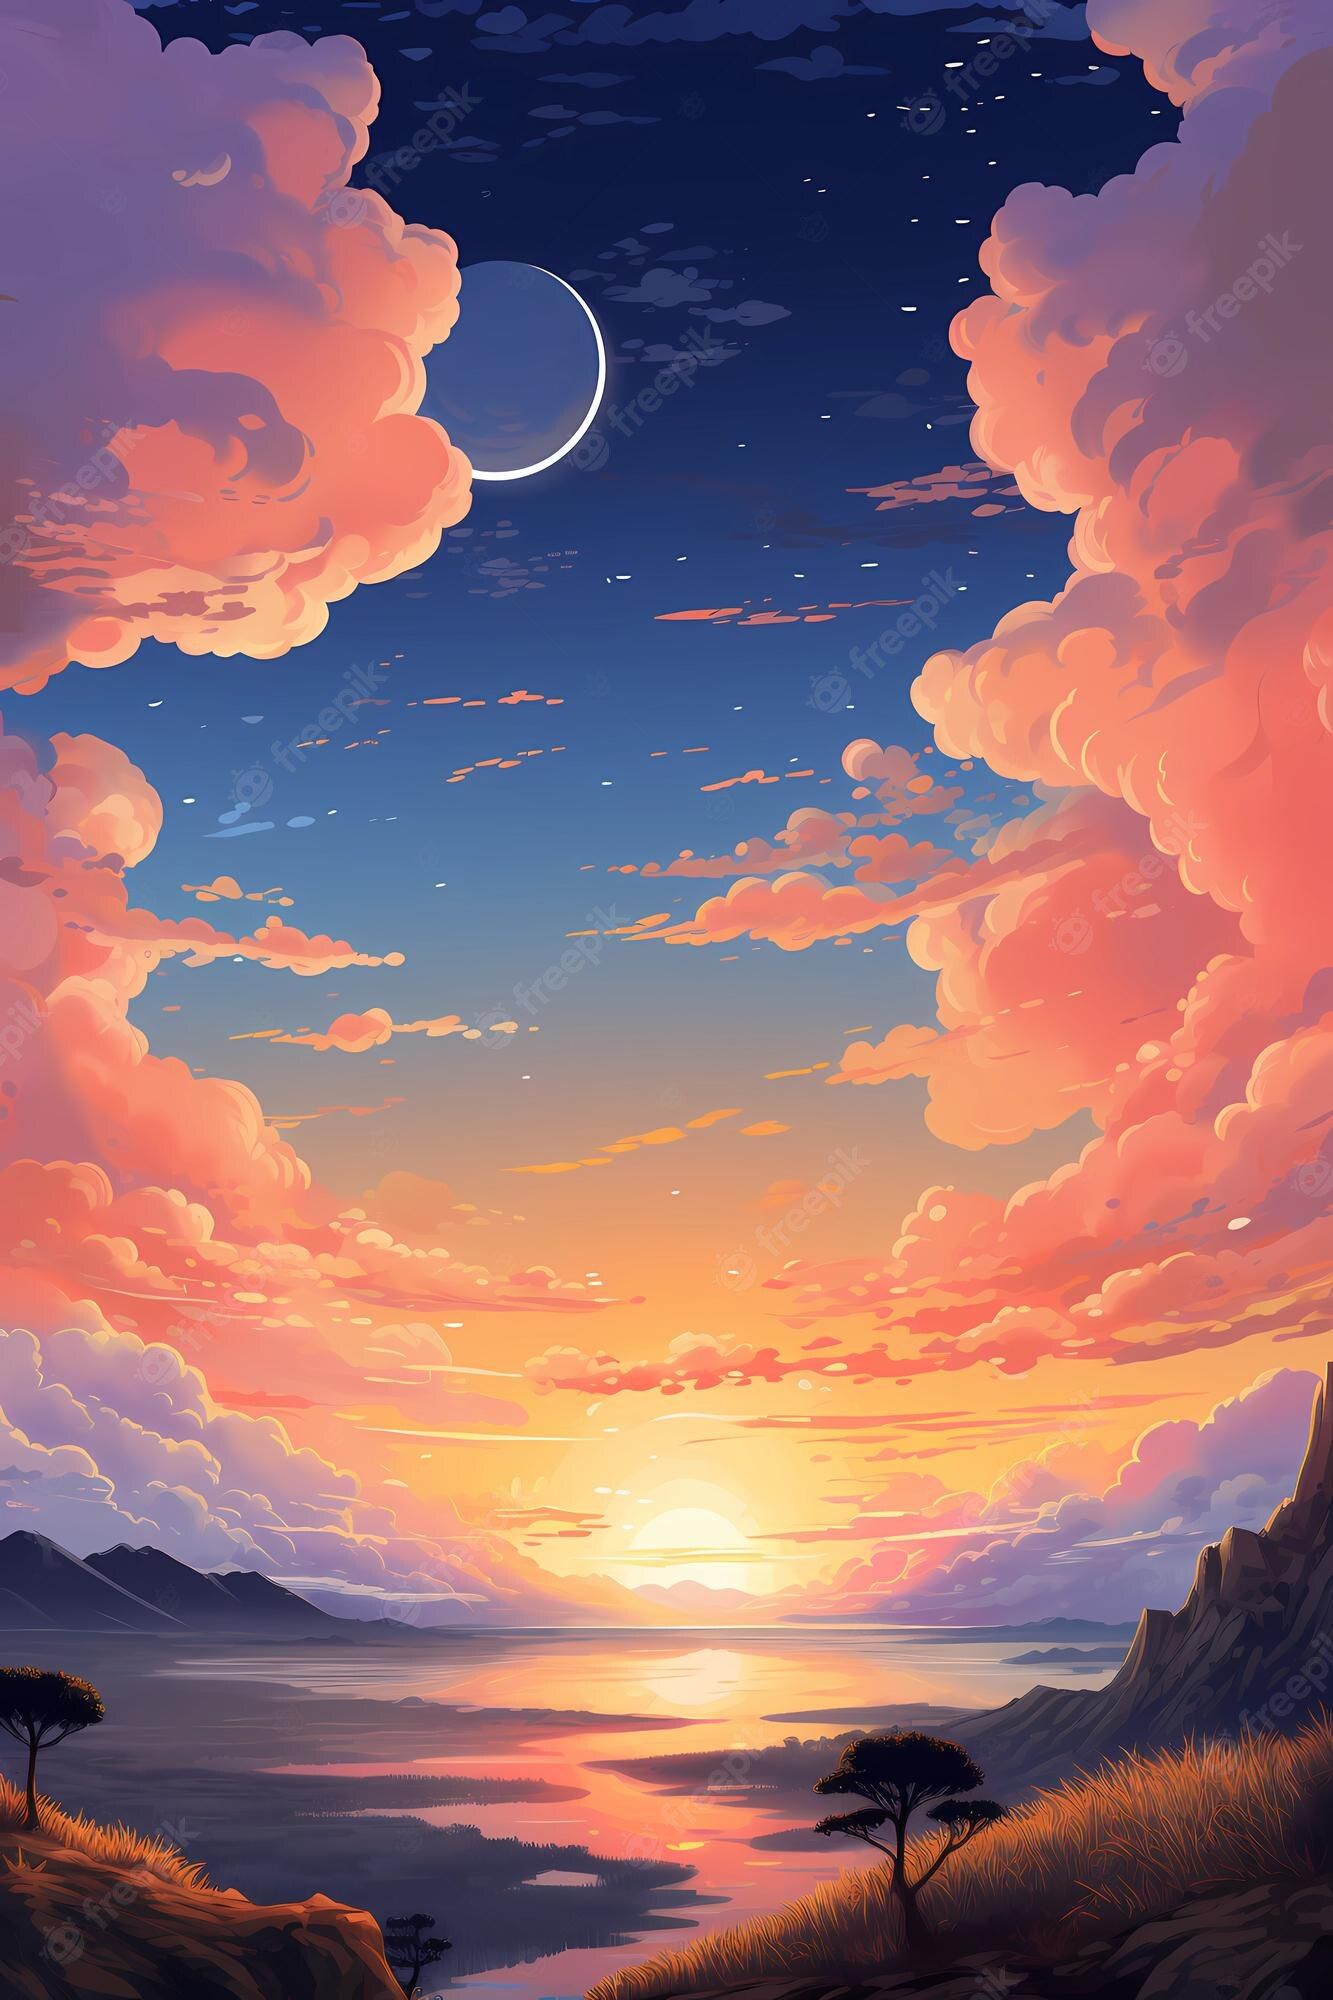 Anime Sunset Image